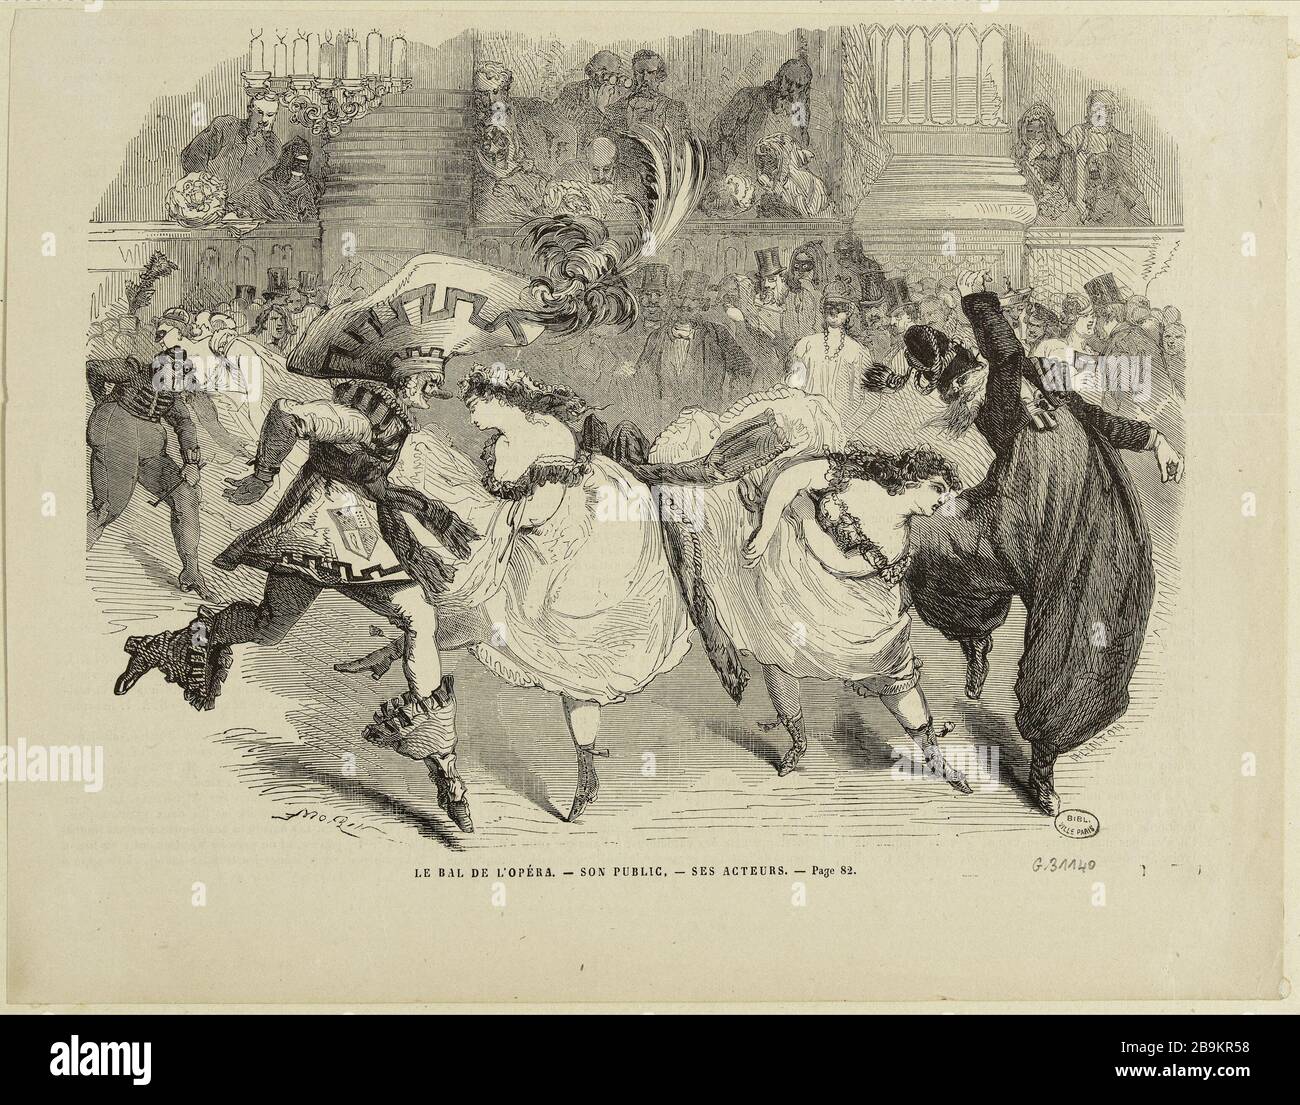 The Opera Ball, No. 82 - his audience, actors Henri Duff Linton(1815-1899). Le bal de l'Opéra, n°82 - son public, ses acteurs. Bois gravé. Paris, musée Carnavalet. Stock Photo